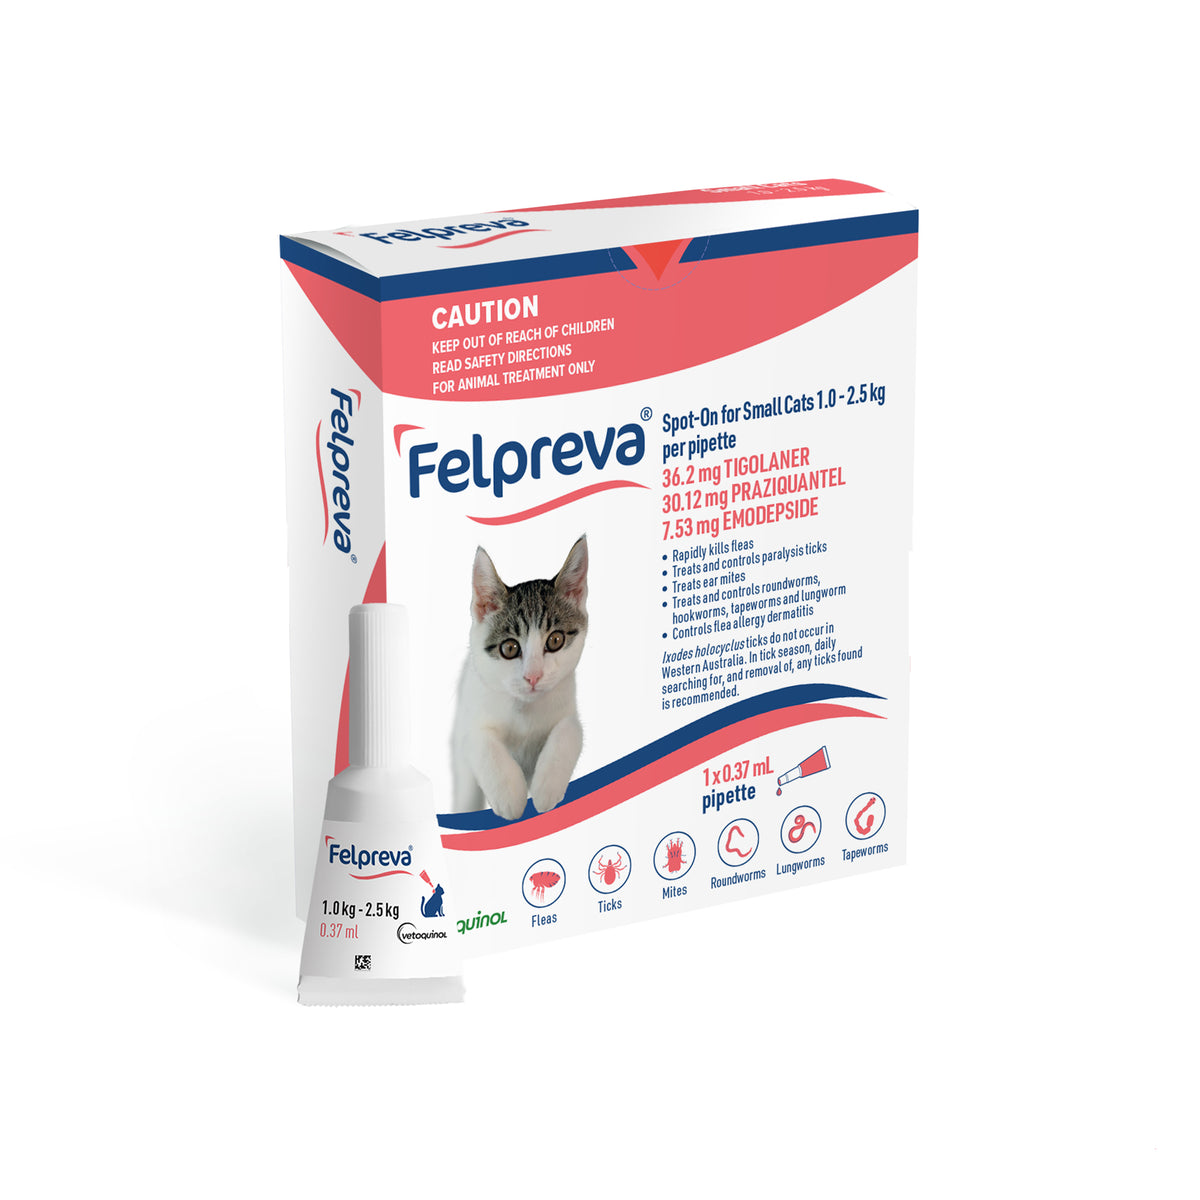 Felpreva Spot-On for Small Cats 1-2kg - 1 pipette